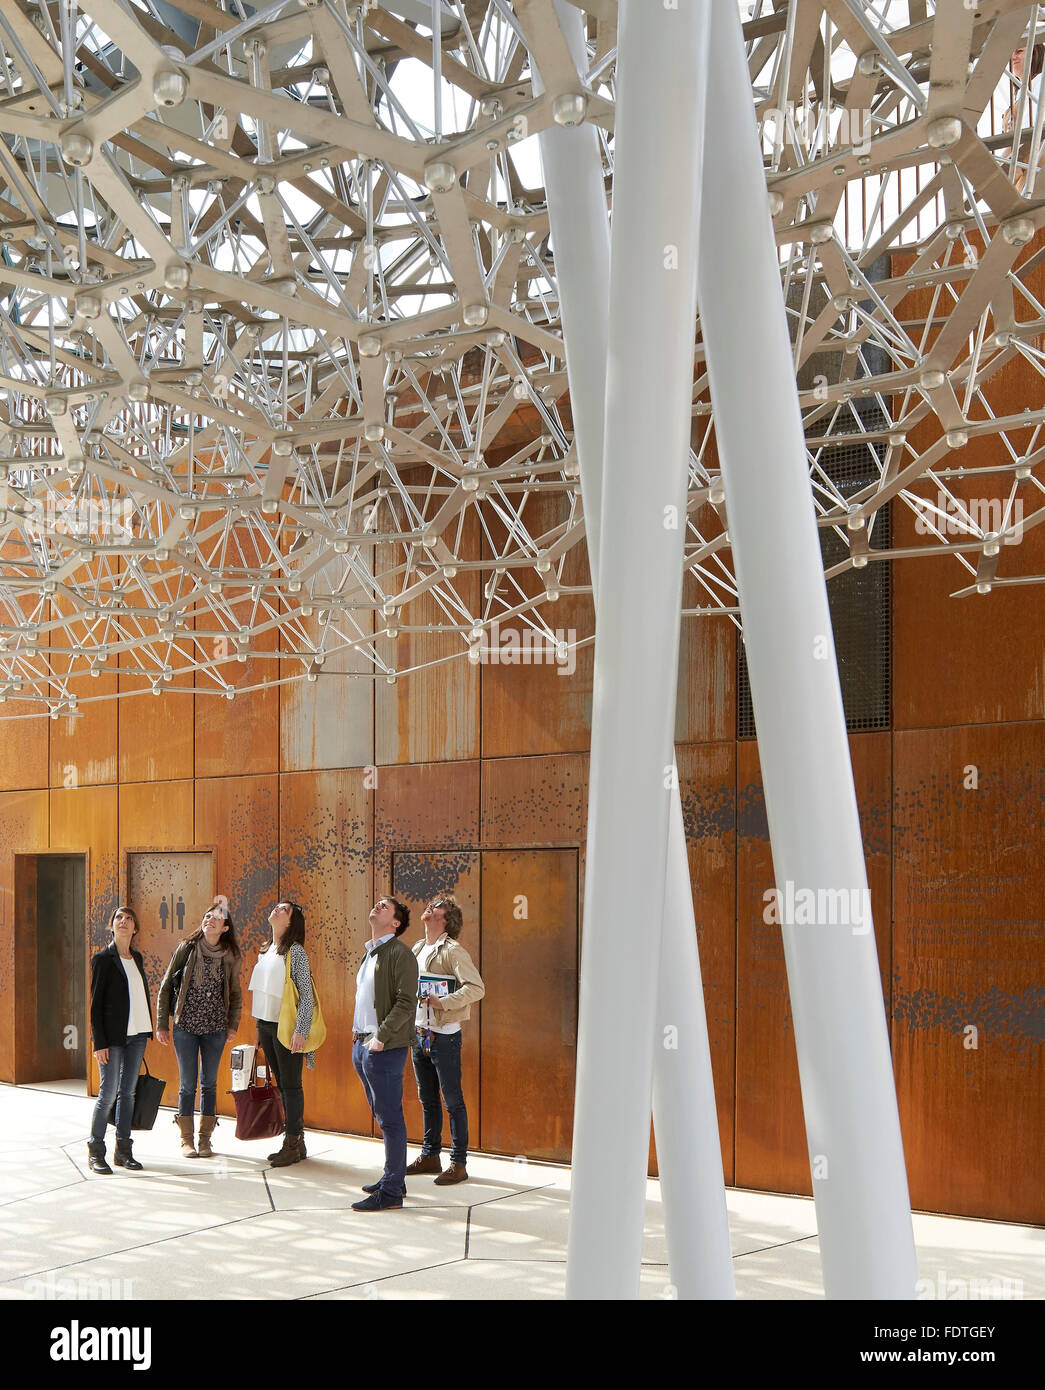 Auf der Dachterrasse unter Bienenstock Struktur. Mailand Expo 2015, britischen Pavillon, Mailand, Italien. Architekt: Wolfgang Buttress, 2015. Stockfoto